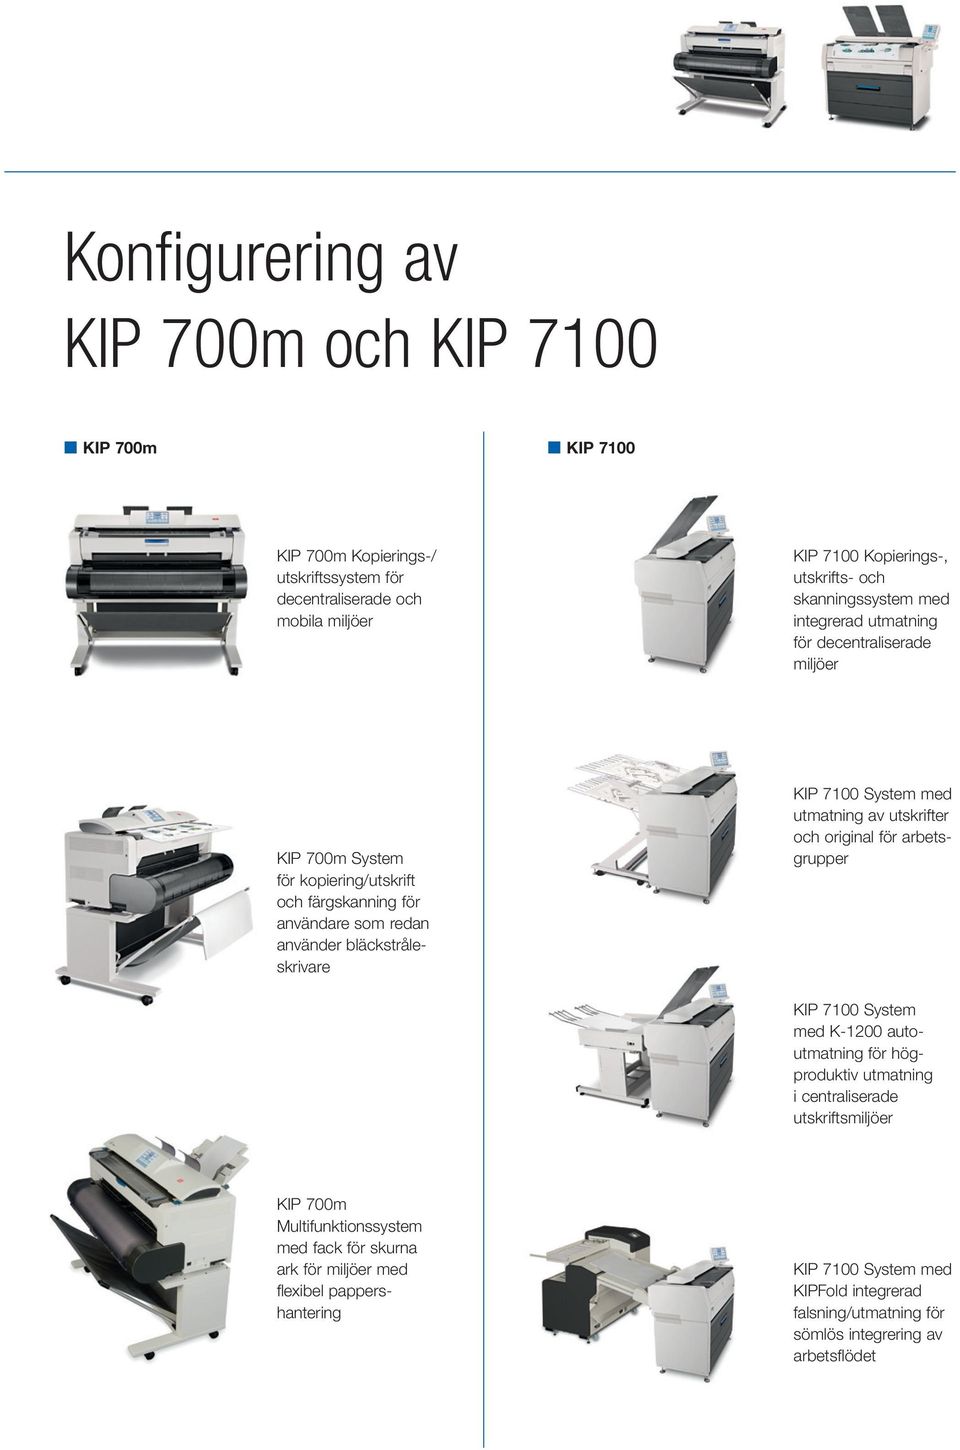 KIP 7100 System med utmatning av utskrifter och original för arbetsgrupper KIP 7100 System med K 1200 autoutmatning för högproduktiv utmatning i centraliserade utskriftsmiljöer